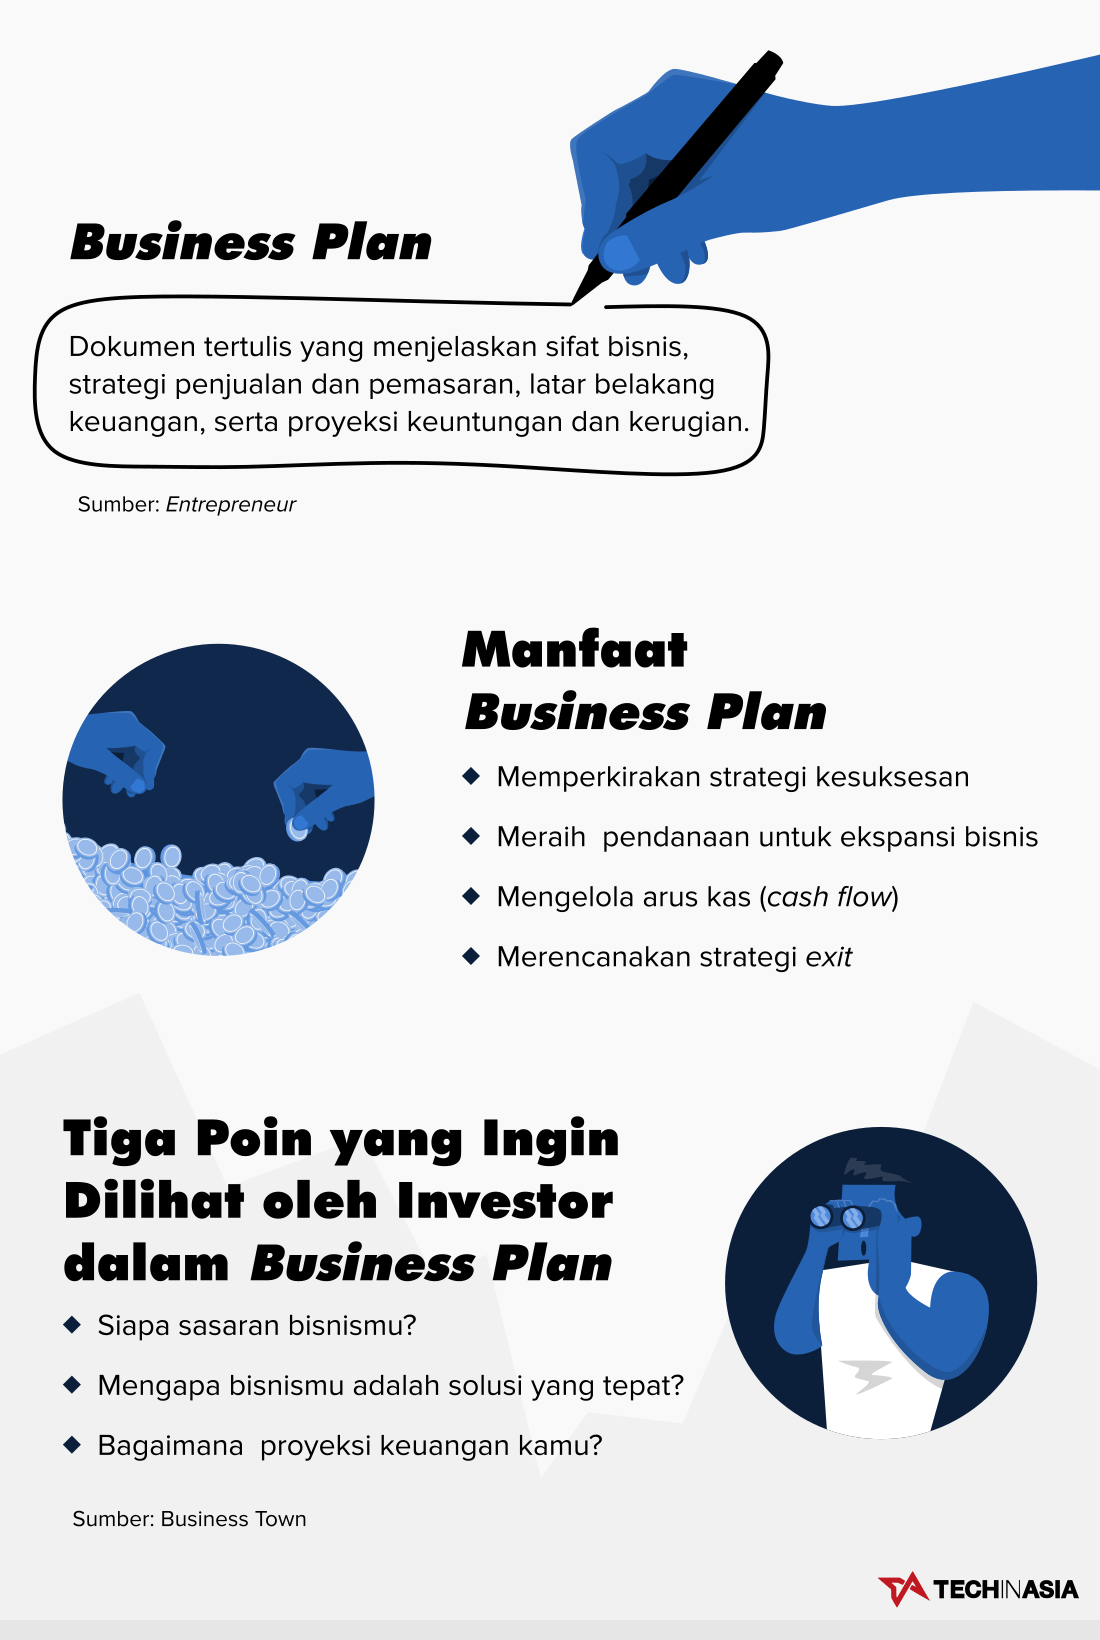 apa manfaat dari business plan